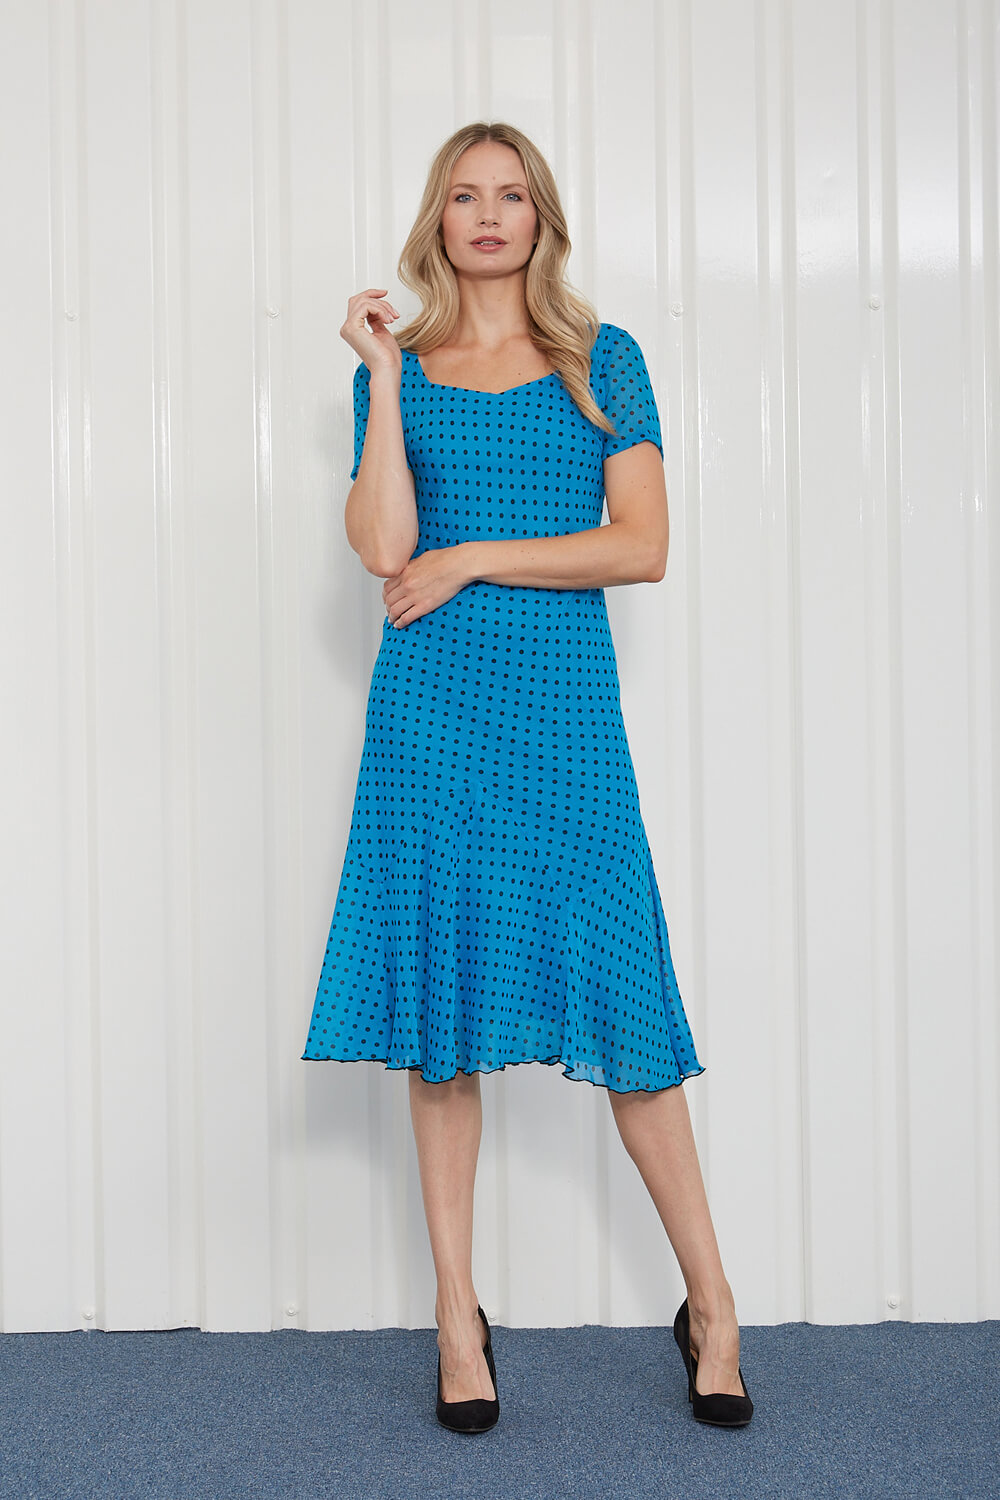 Turquoise Julianna Spot Print Chiffon Dress, Image 3 of 4